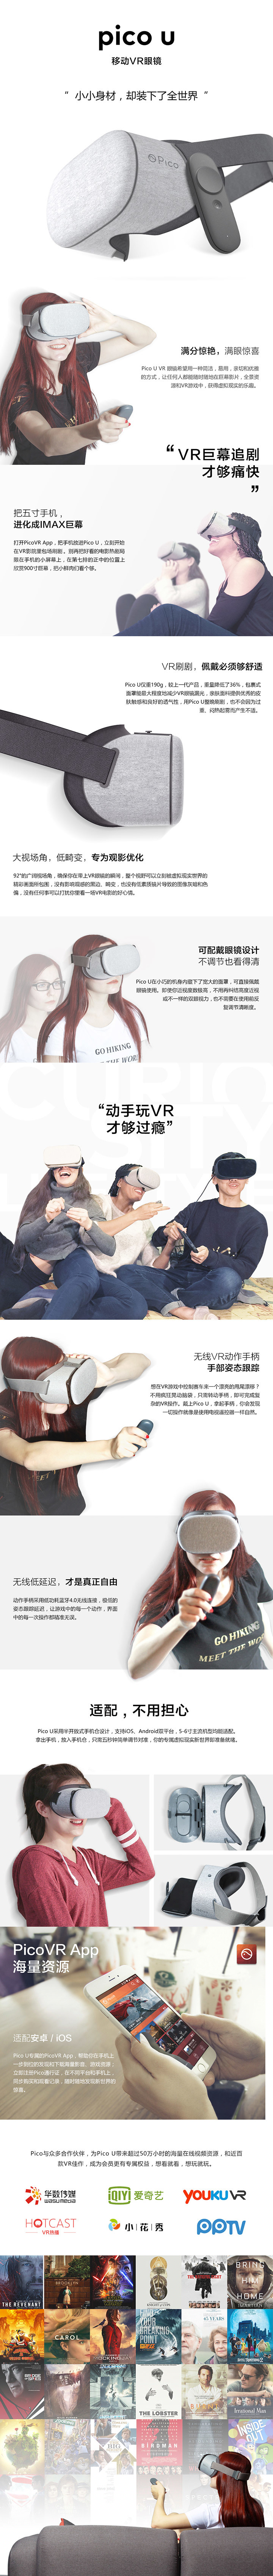 Pico U移动VR眼镜免费试用,评测